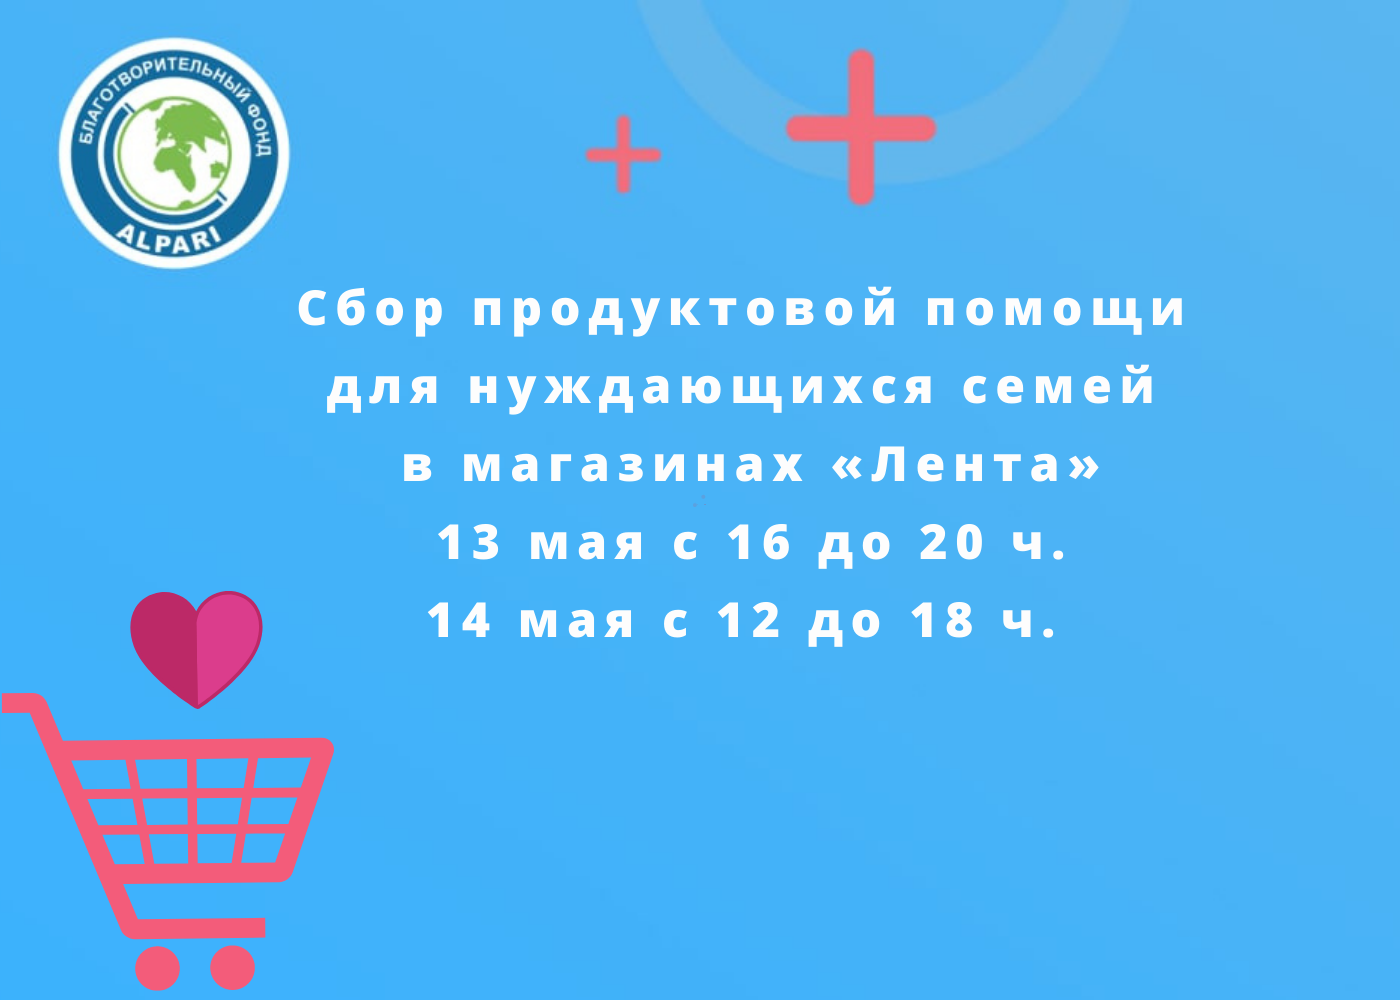 Сбор продуктовой помощи в Казани